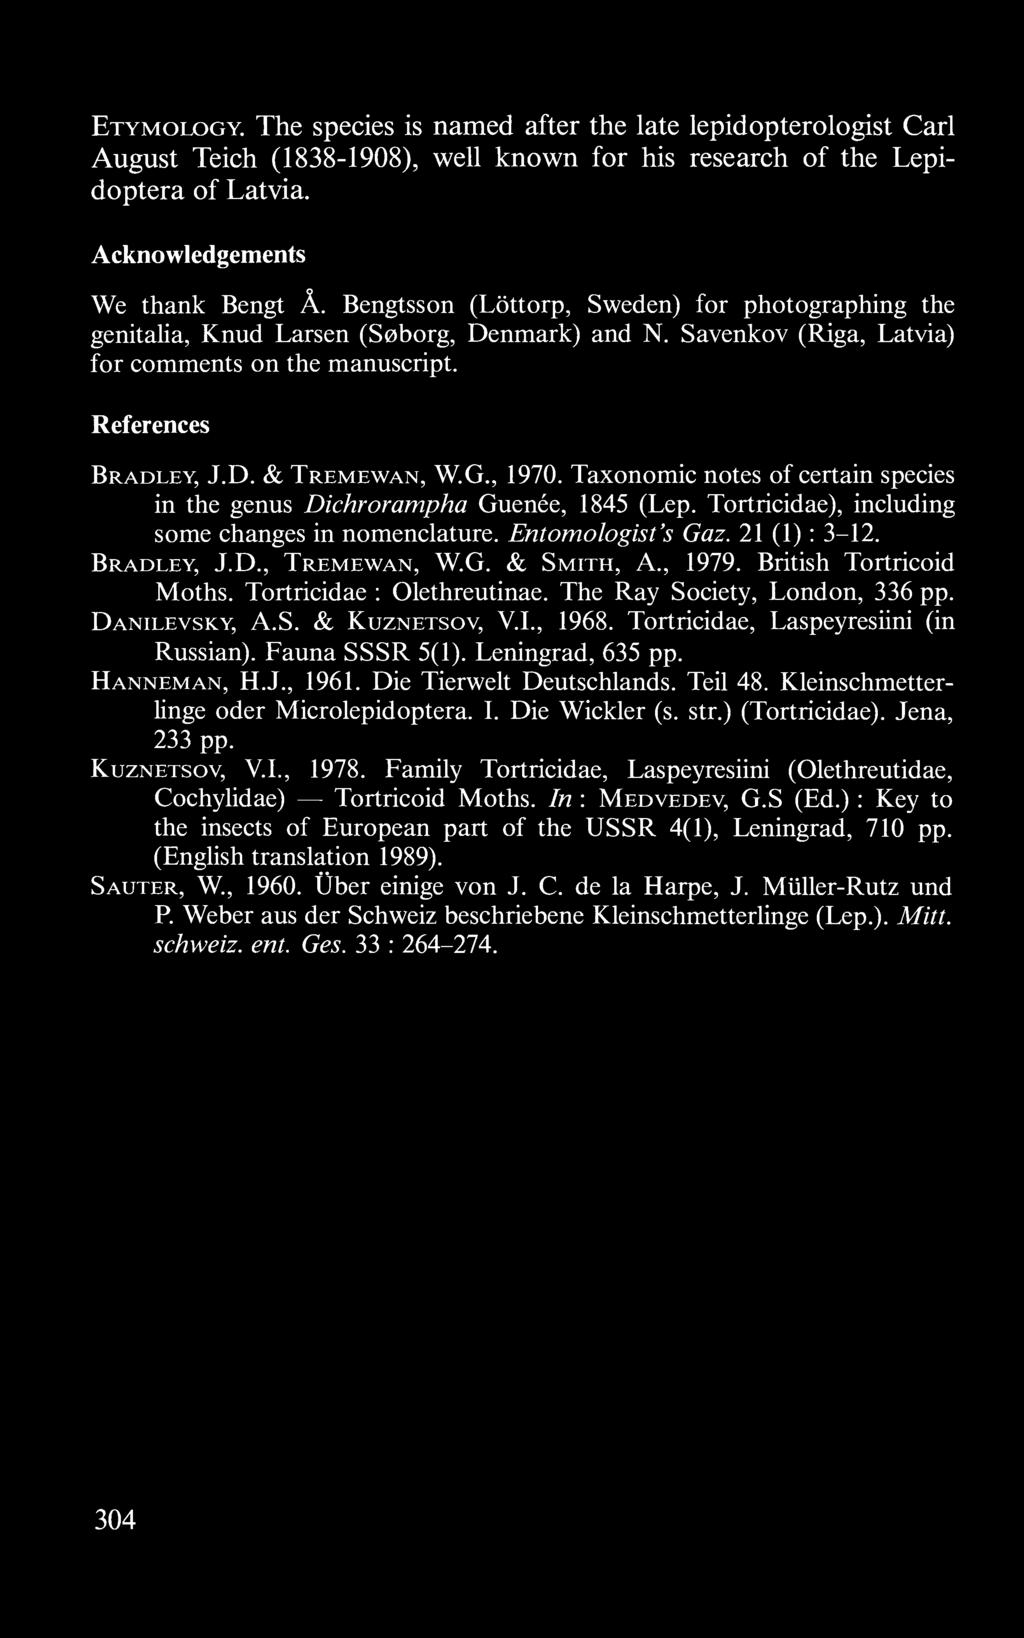 Fauna SSSR 5(1). Leningrad, 635 pp. Hanneman, H.J., 1961. Die Tierwelt Deutschlands. Teil 48. Kleinschmetterlinge oder Microlepidoptera. I. Die Wickler (s. str.) (Tortricidae). Jena, 233 pp.